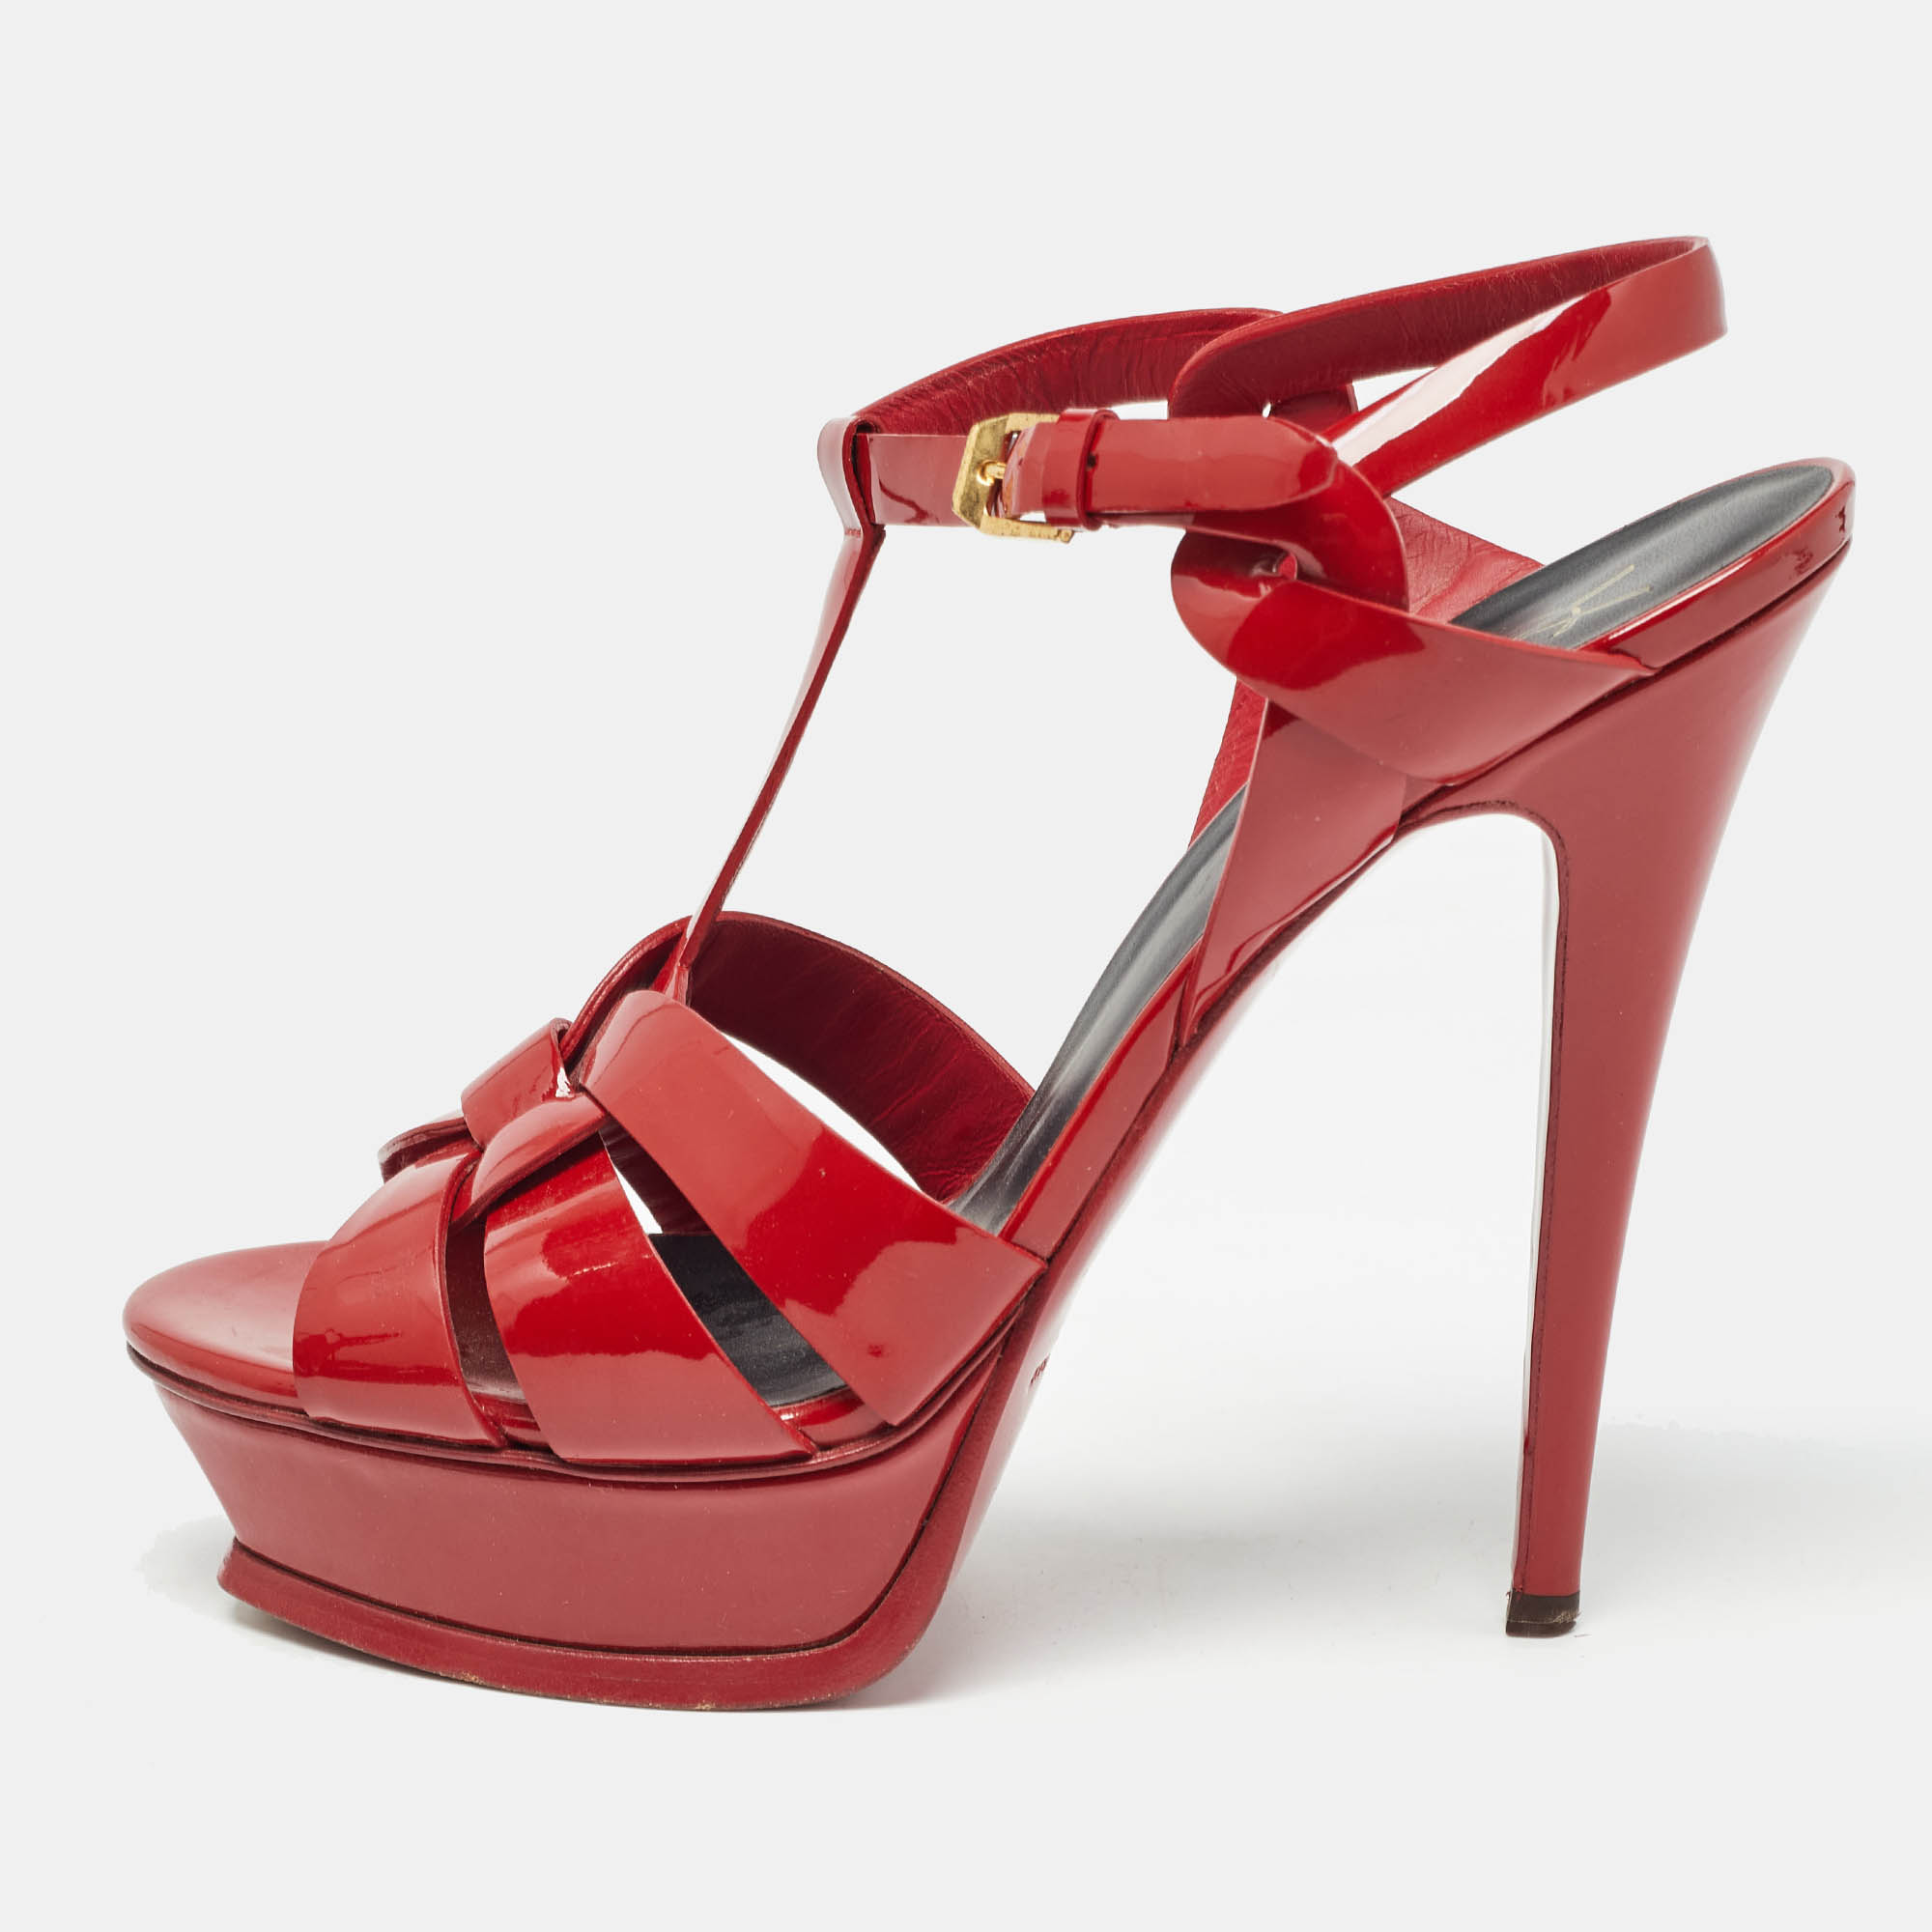 Saint laurent paris saint laurent red patent leather tribute sandals size 39.5